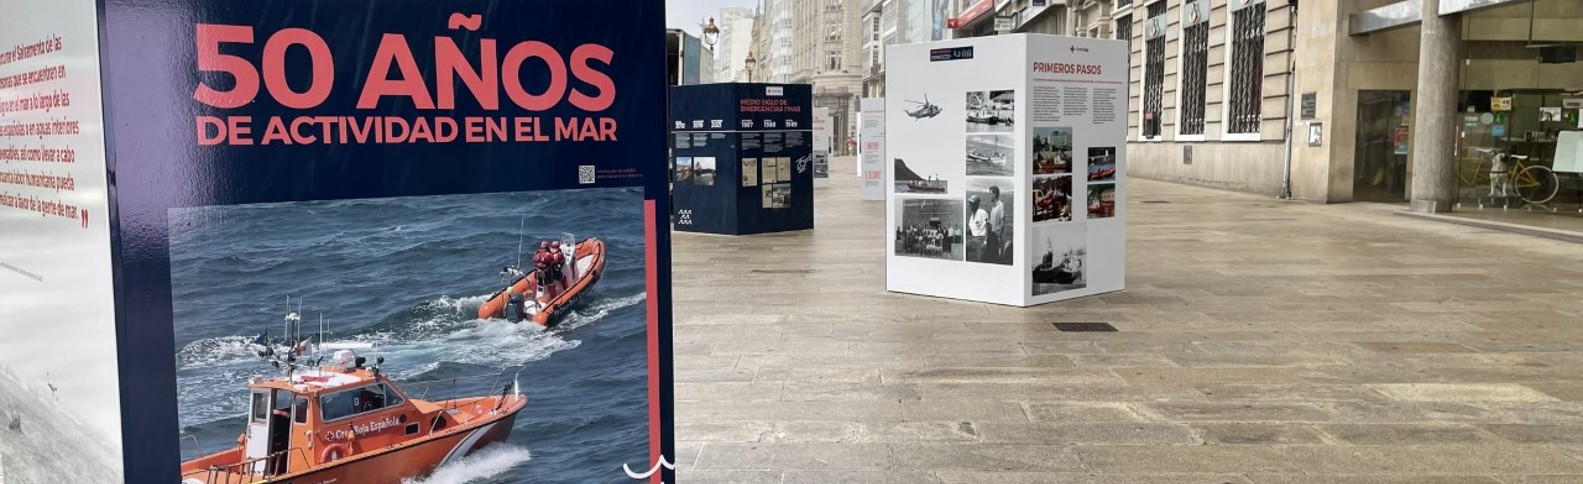 ‘50 años de actividad en el mar’, la exposición de Cruz Roja en A Coruña